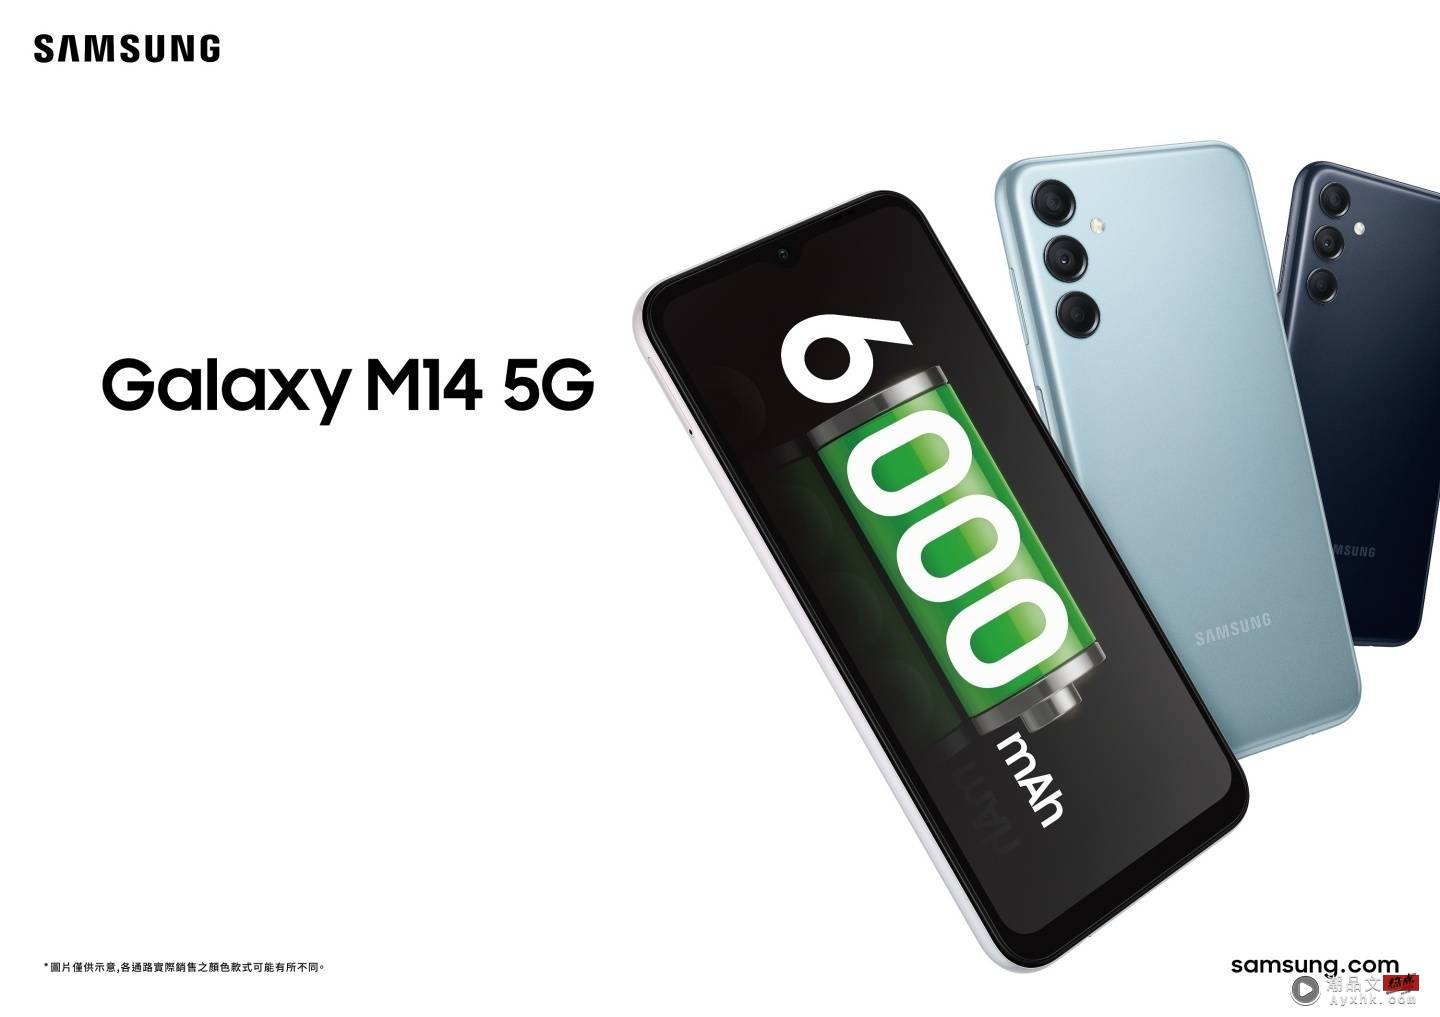 三星迎来 Galaxy A34、A54 5G、M14 5G 三款新机！M14 5G 最低新台币 6,490 元就能入手 数码科技 图5张